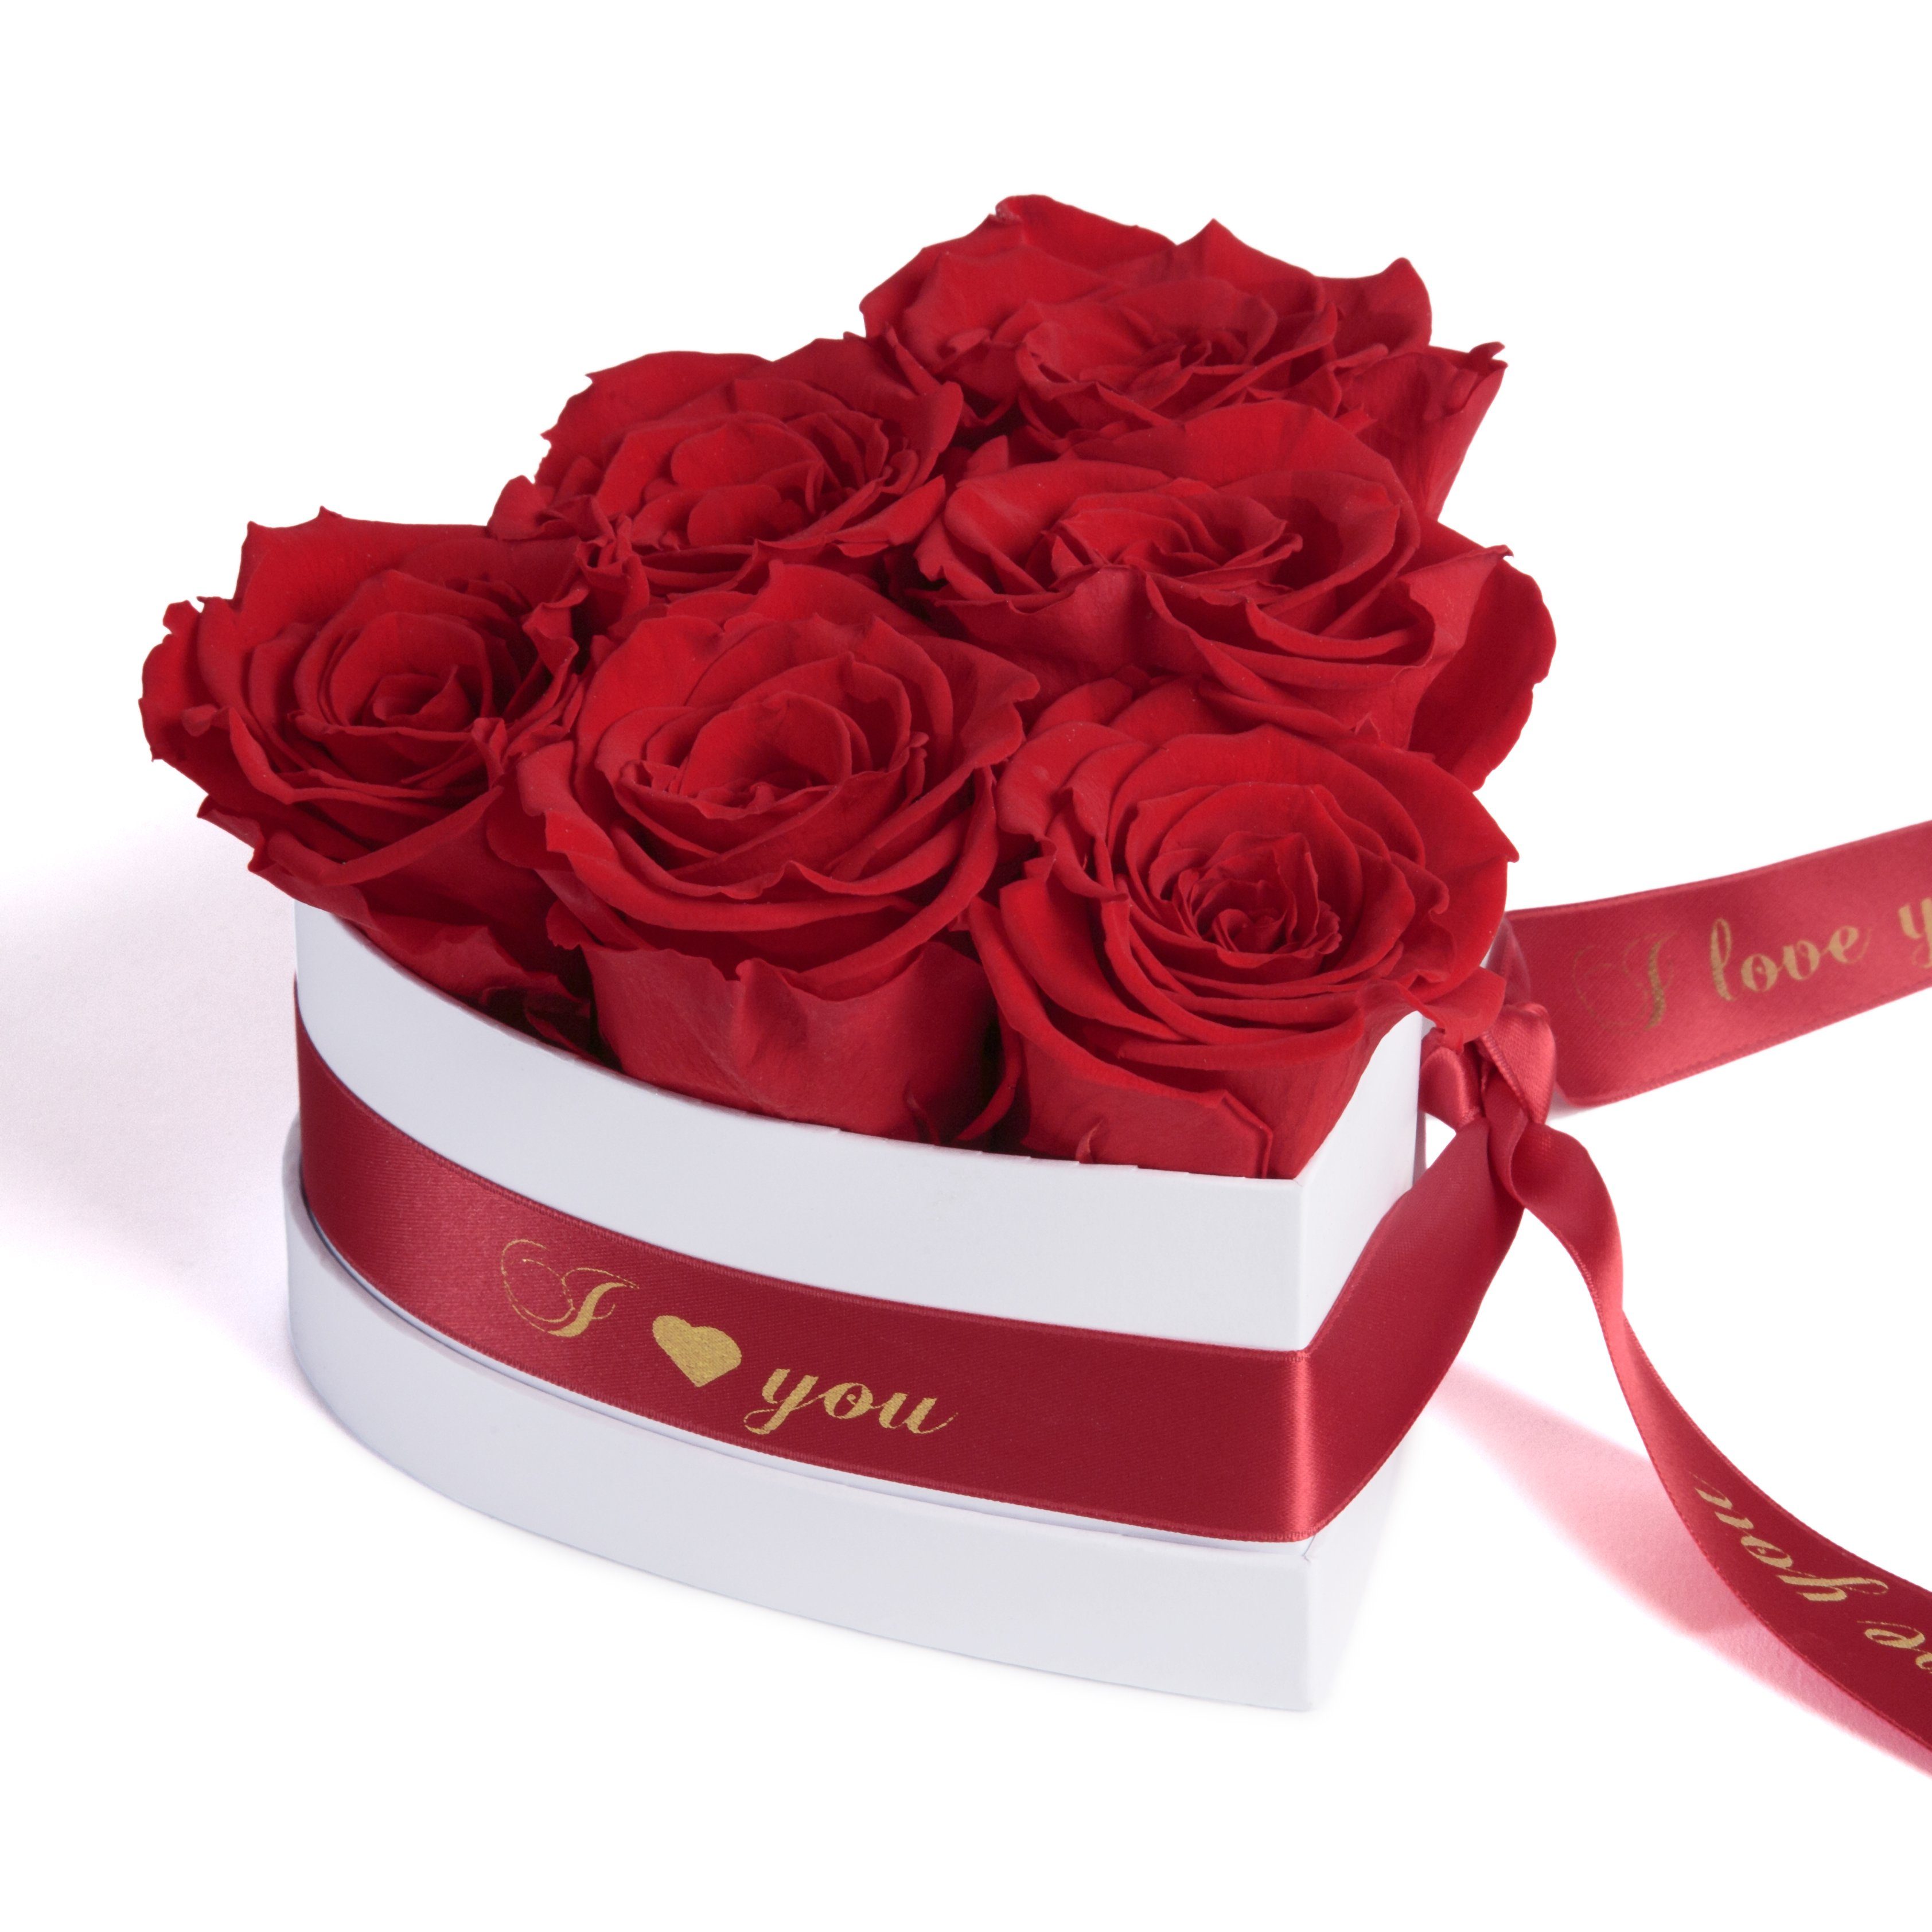 Kunstblume Infinity Rosenbox Herz 6 ewige Rosen I Love You Geschenk für Frauen Rose, ROSEMARIE SCHULZ Heidelberg, Höhe 10 cm, Valentinstag Geschenk für Frau Rot